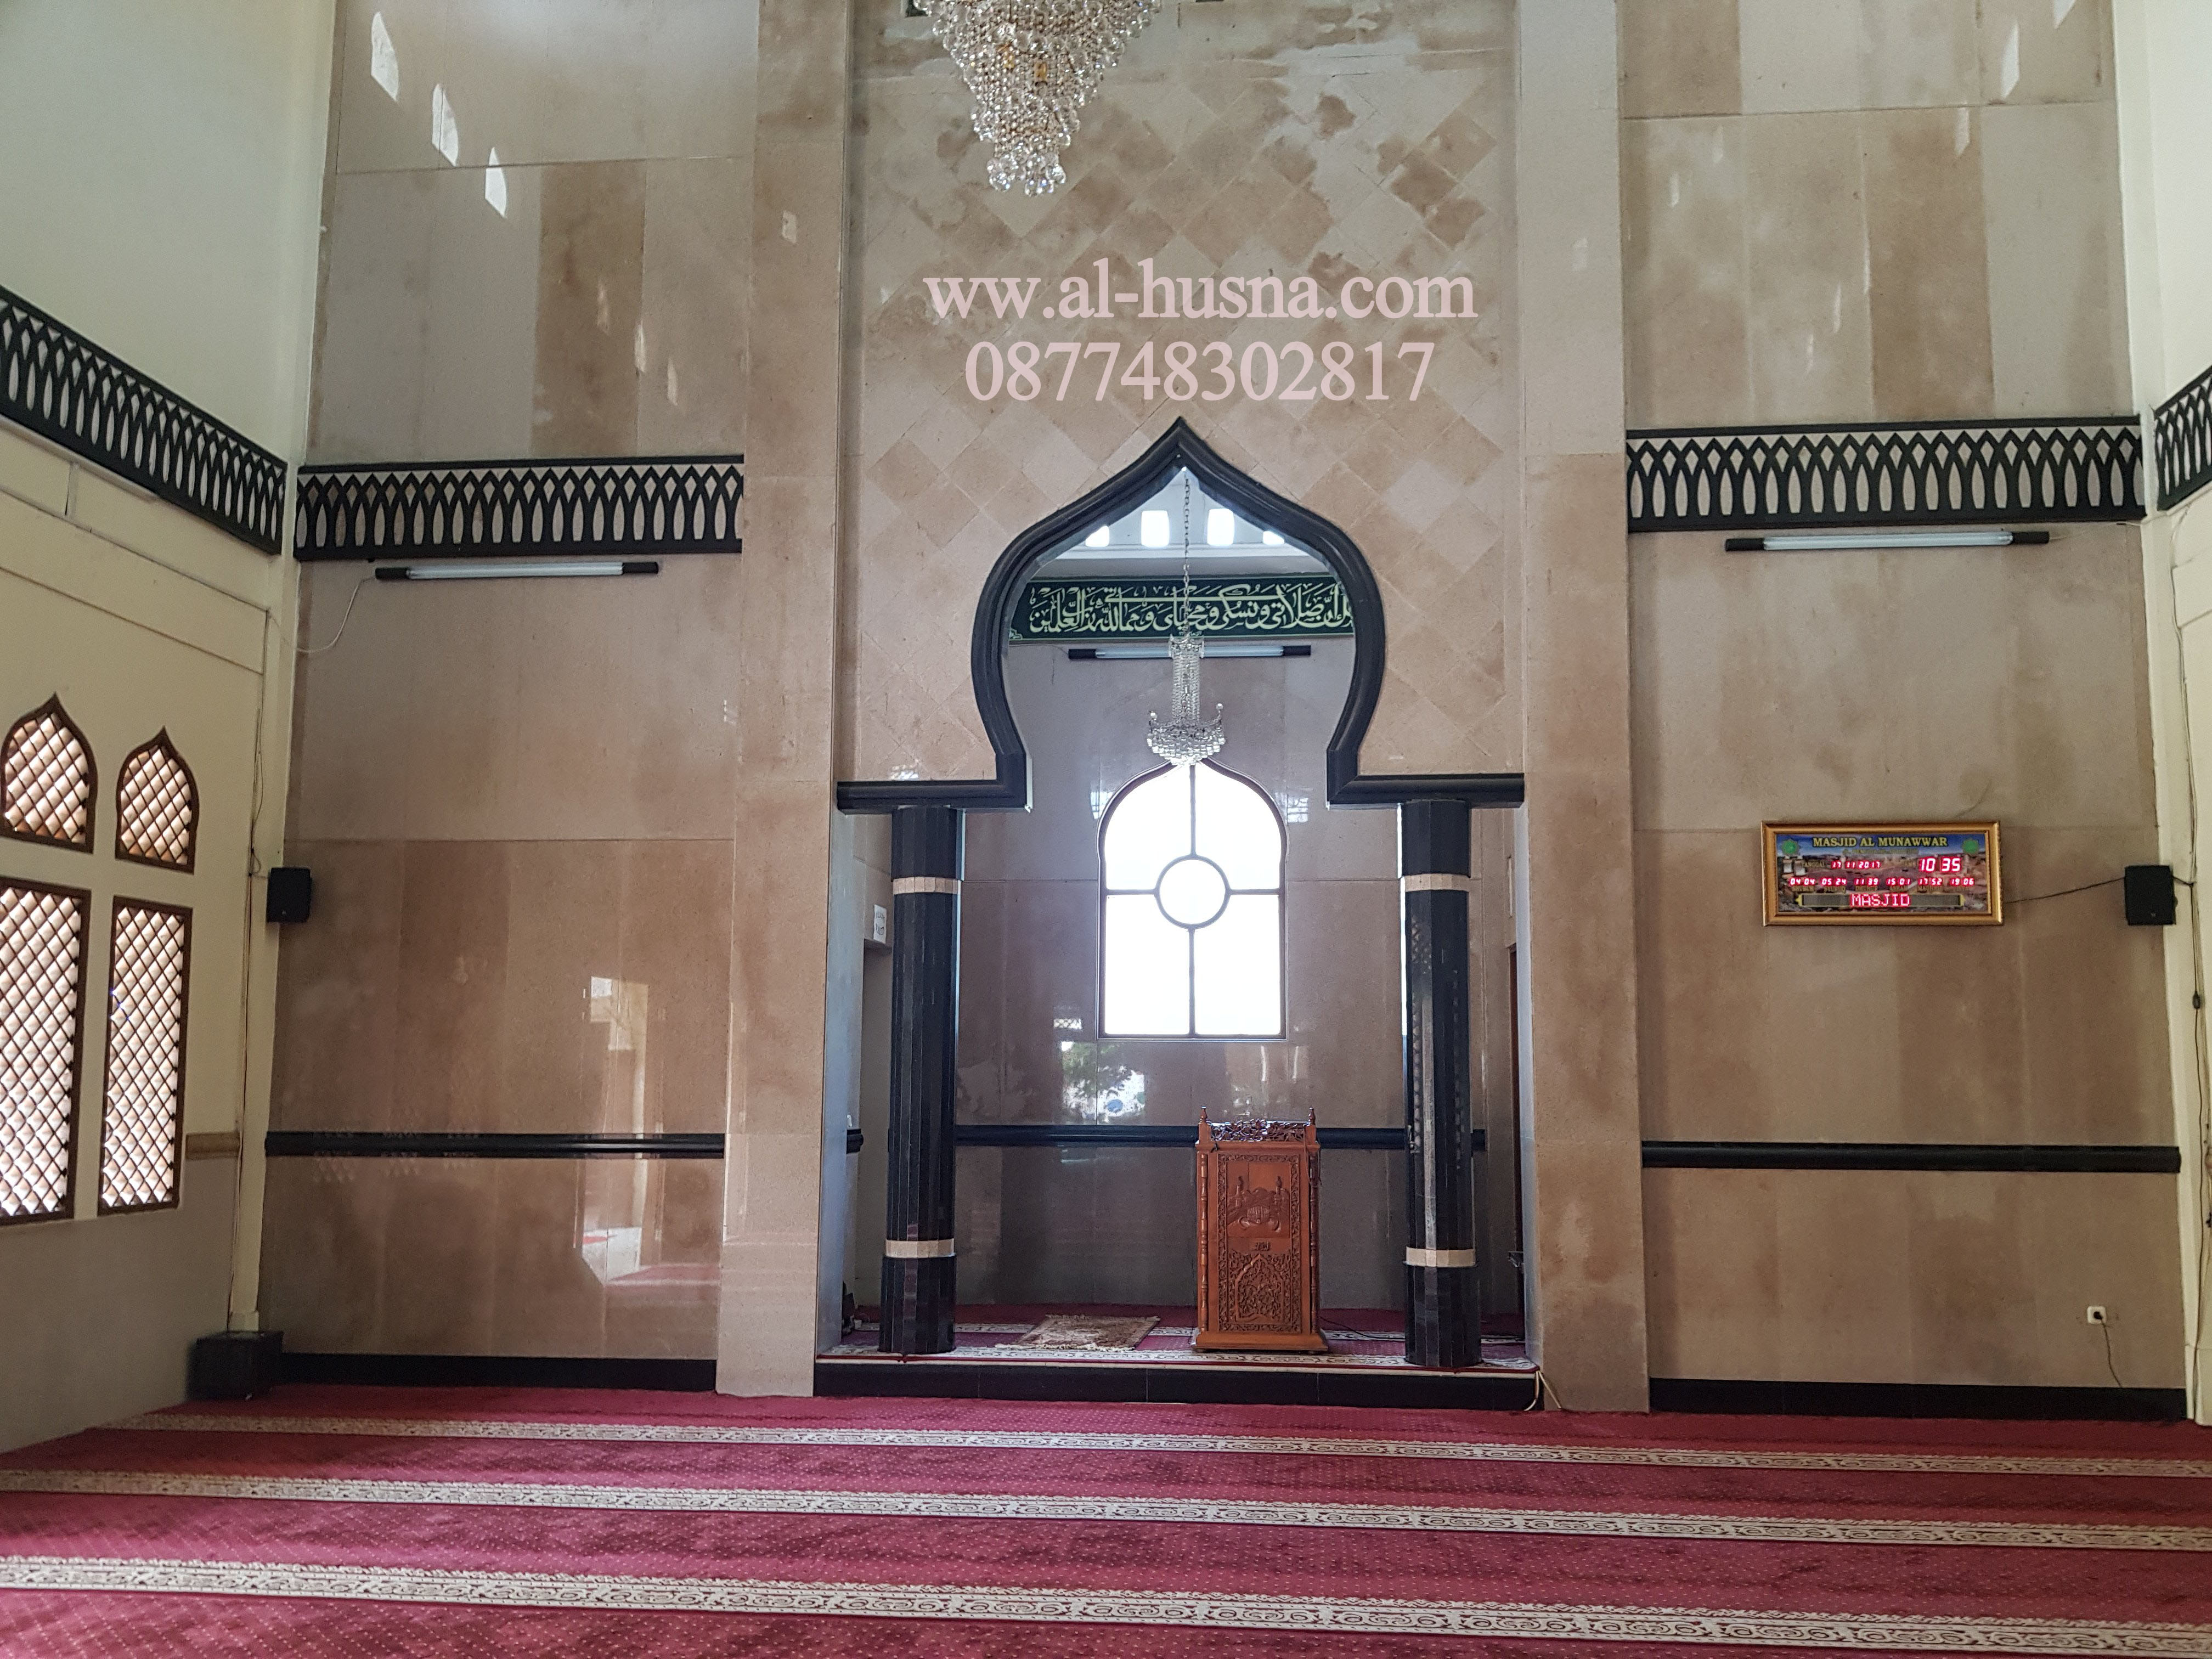 Daftar Harga Karpet Masjid Di Cibuntu Cibitung